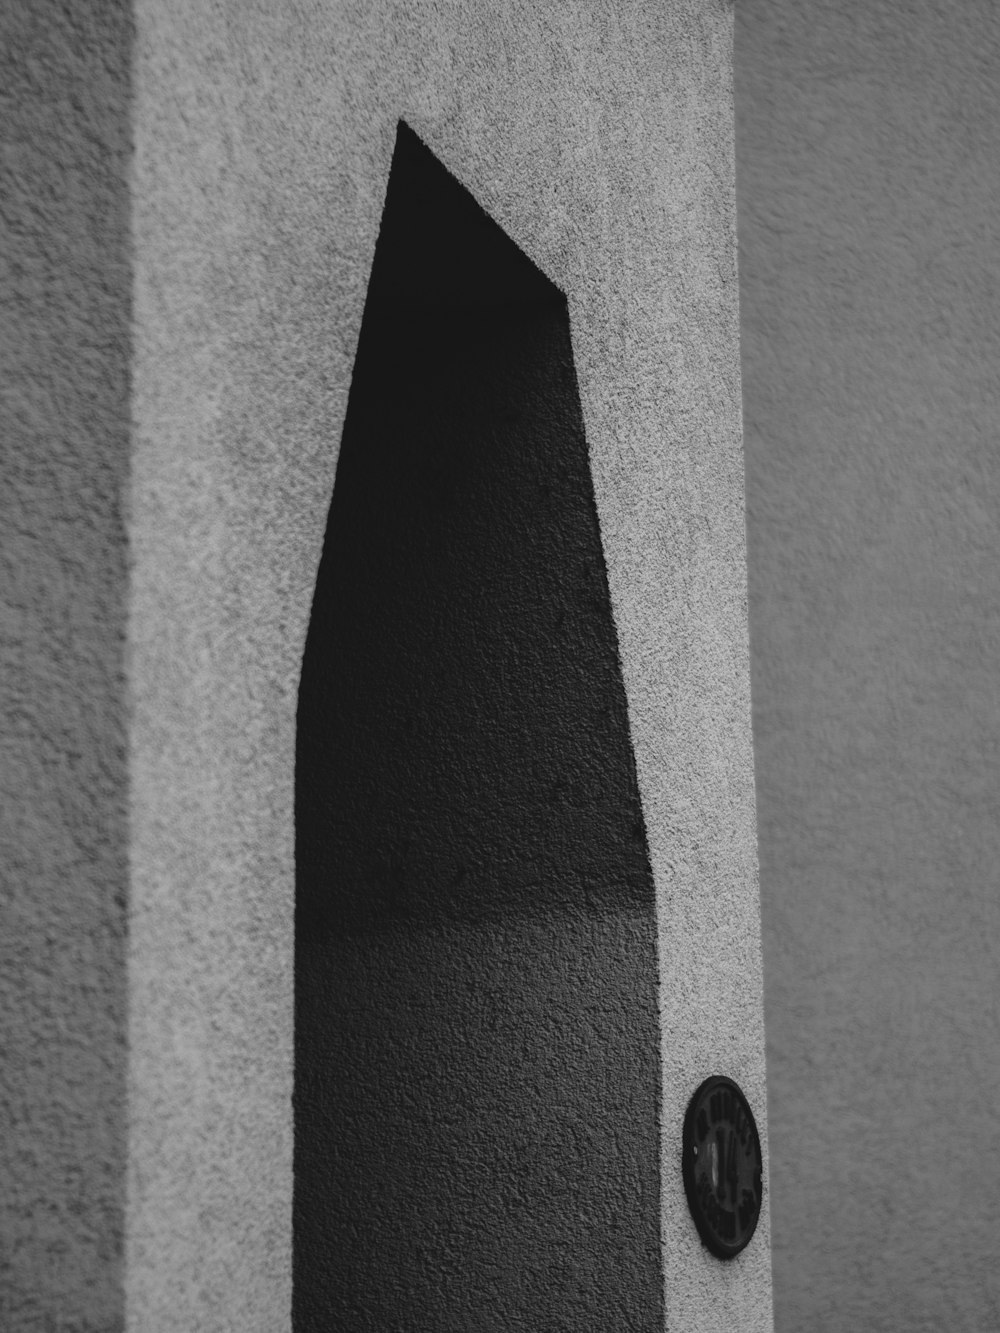 una foto in bianco e nero di una porta e di un muro